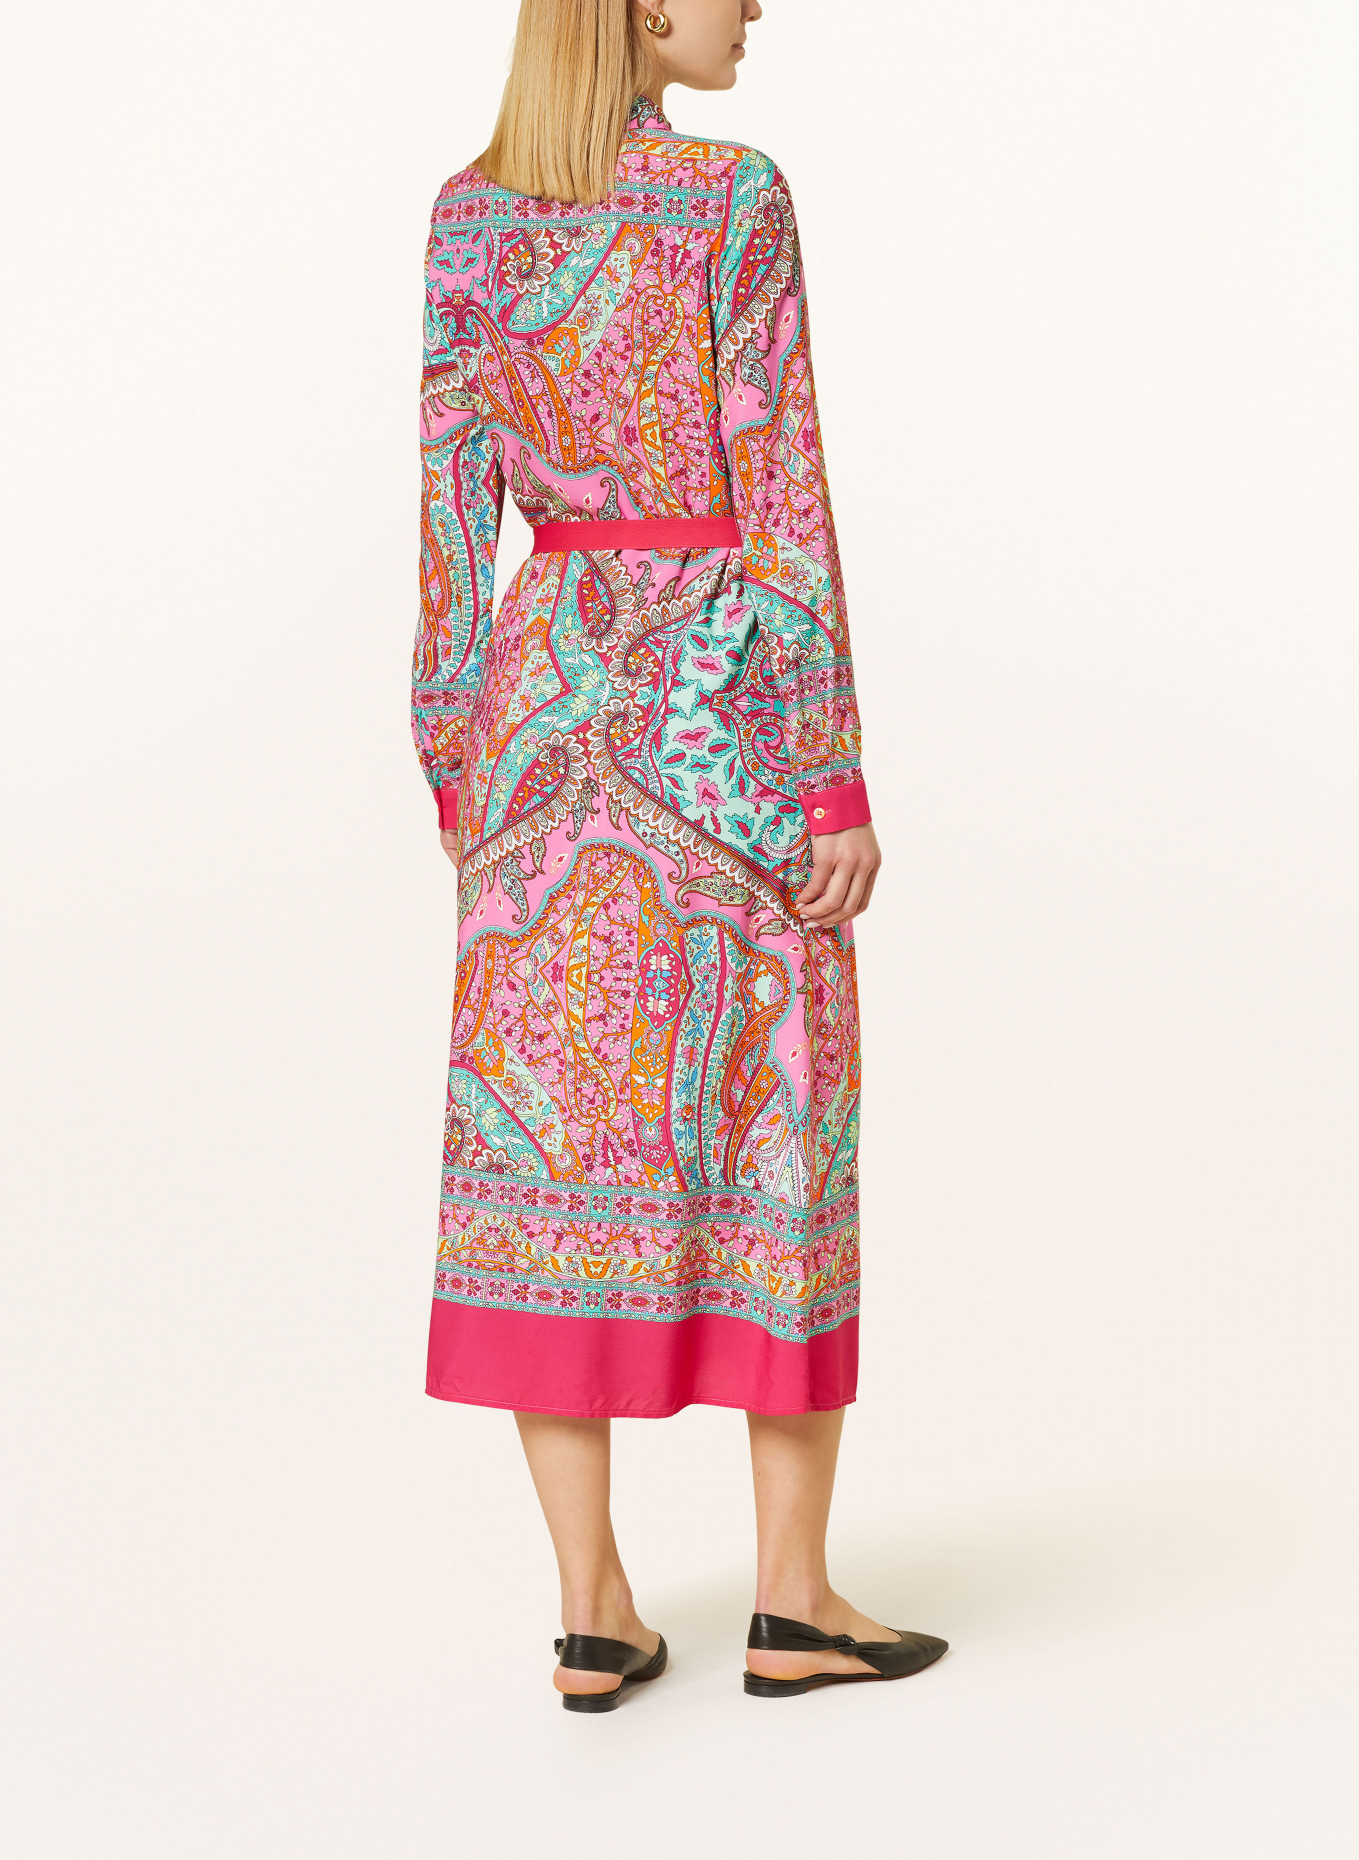 Emily VAN DEN BERGH Shirt dress, Color: PINK/ MINT/ ORANGE (Image 3)